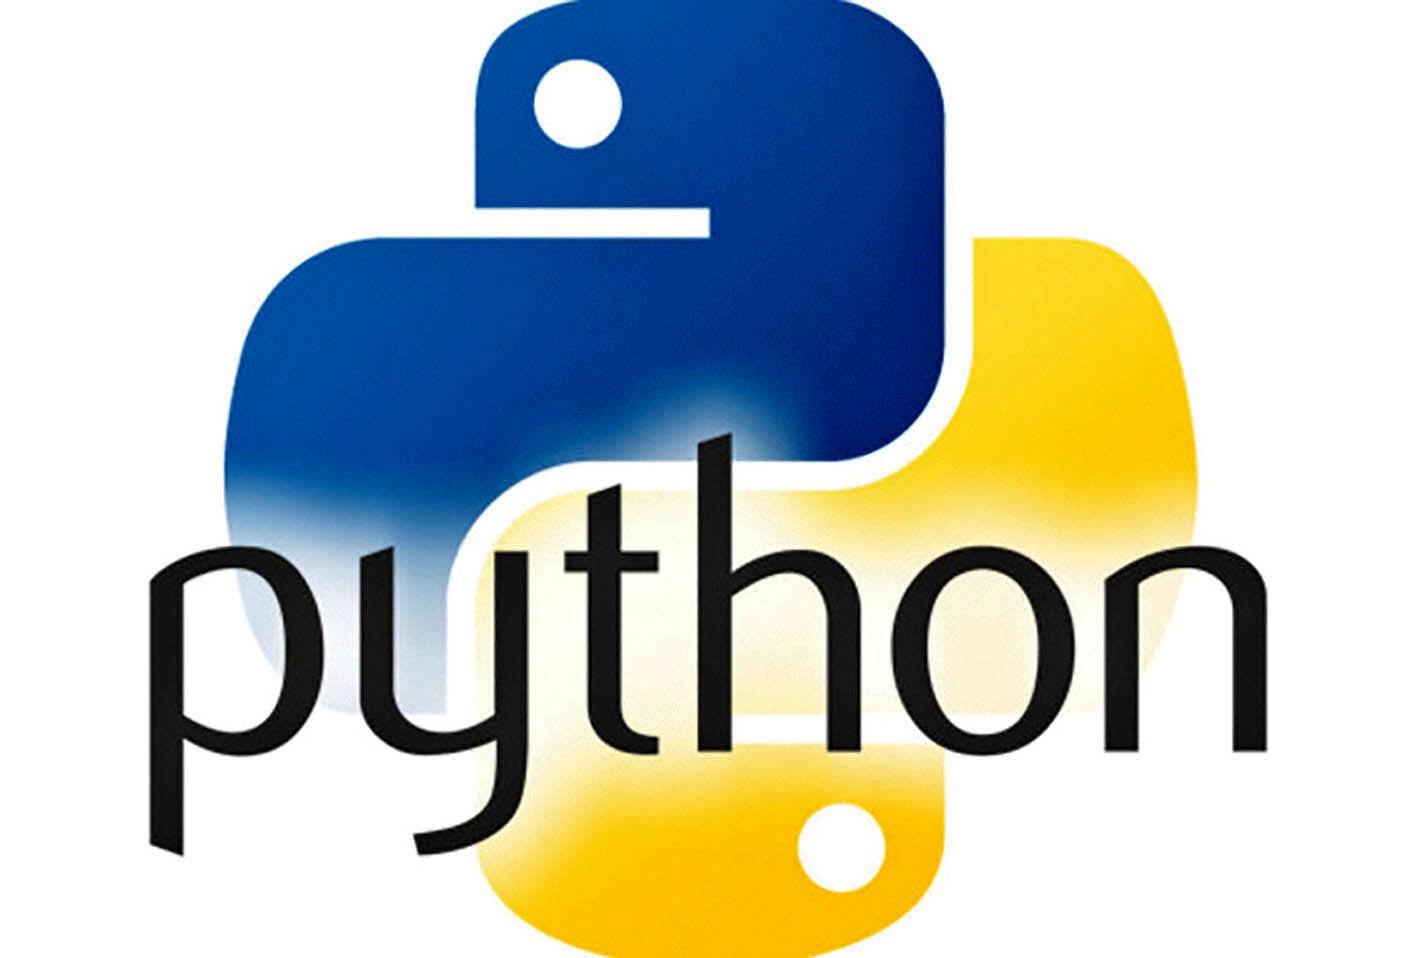 Логотип языка python. Язык программирования phuton логотип. Питон язык программирования. Python программирование логотип. Пион язык программирования.